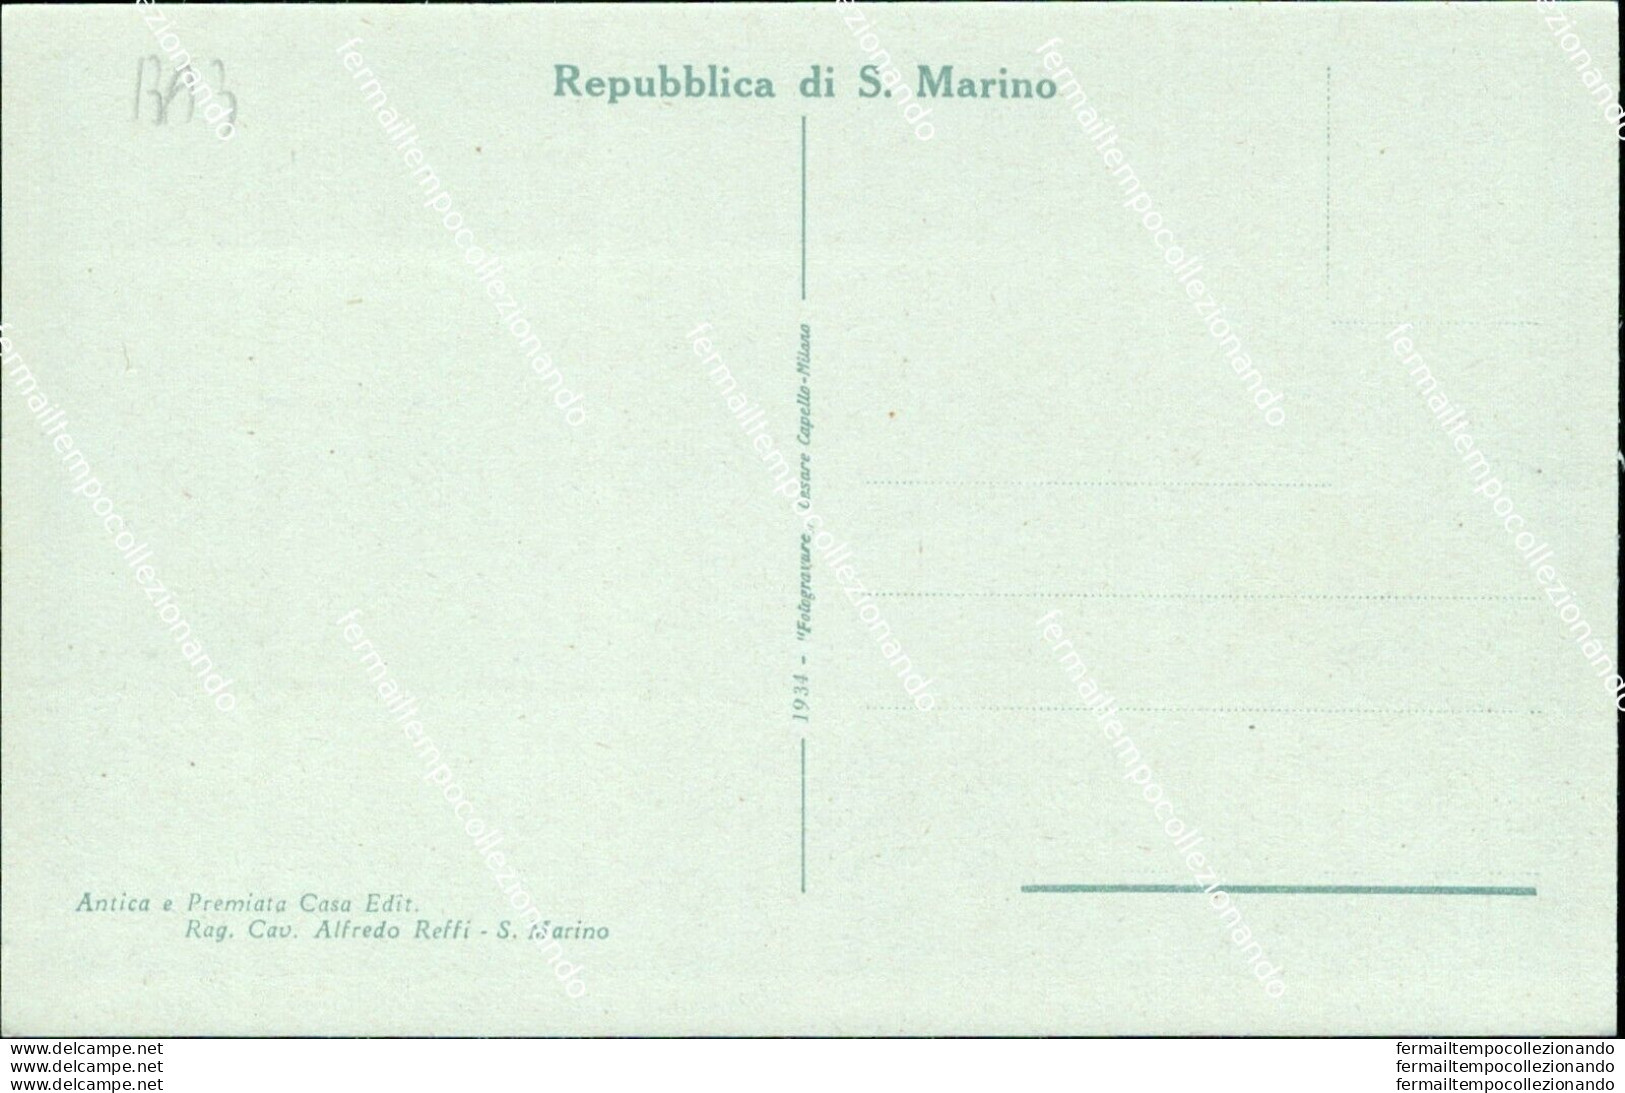 Ba3 Cartolina Repubblica Di San Marino Panorama  Della Citta' E Borgo Maggiore - San Marino